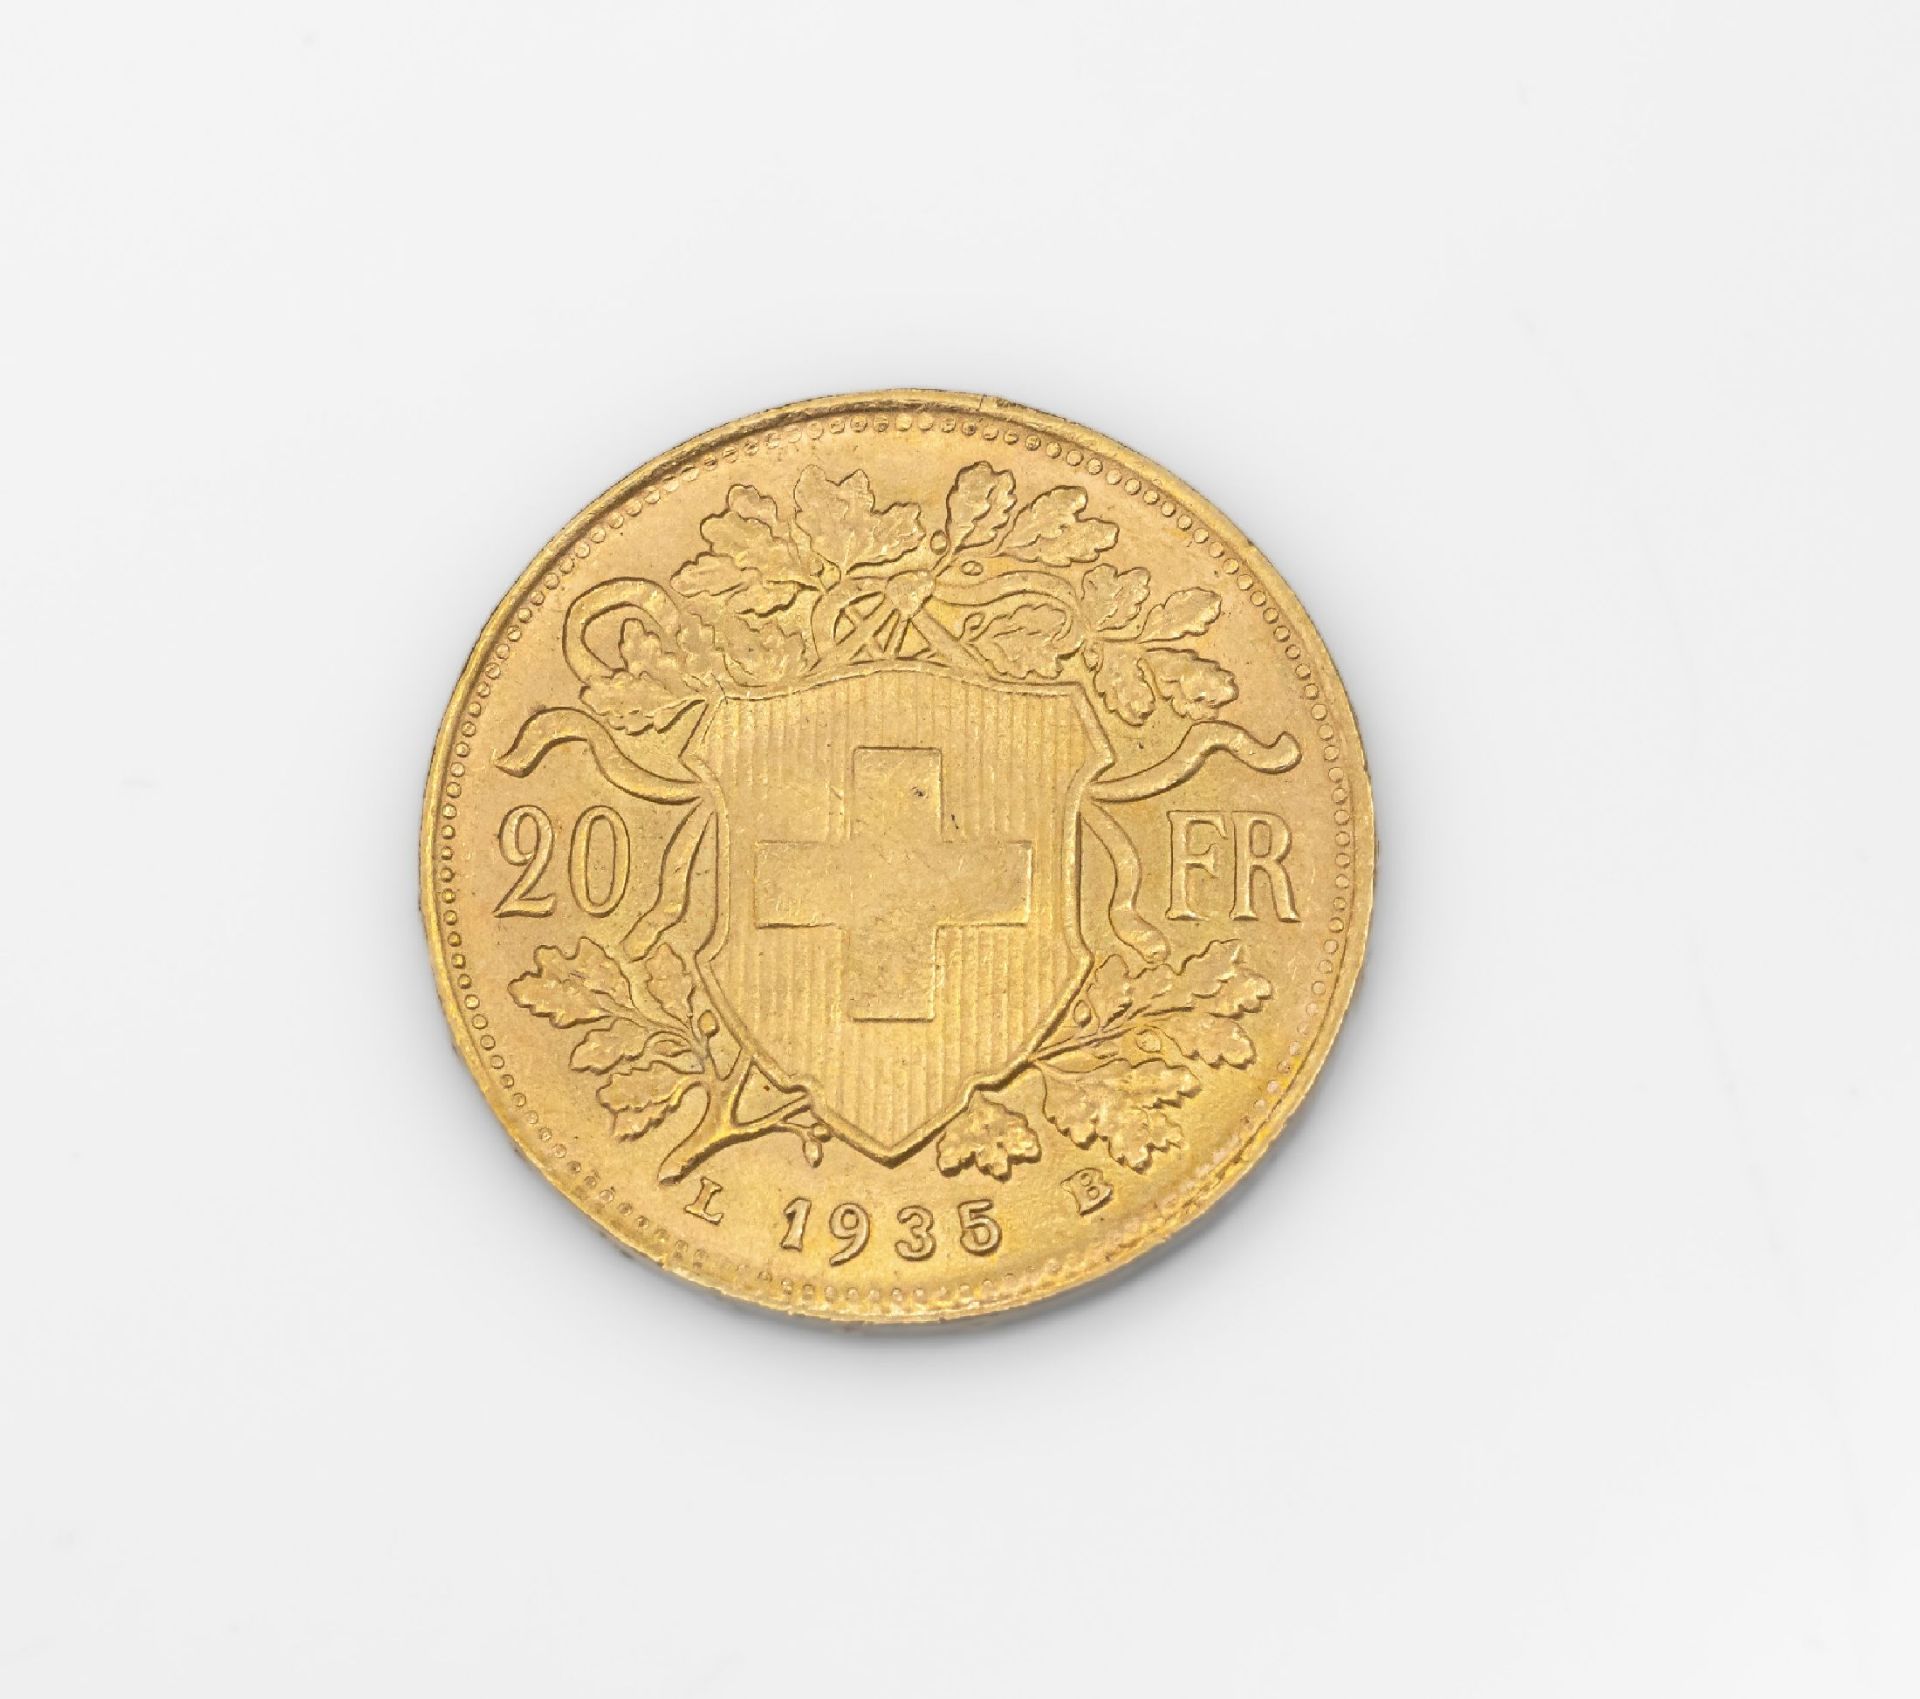 Goldmünze 20 Franken Schweiz 1935, sogn. Vreneli, - Image 2 of 2